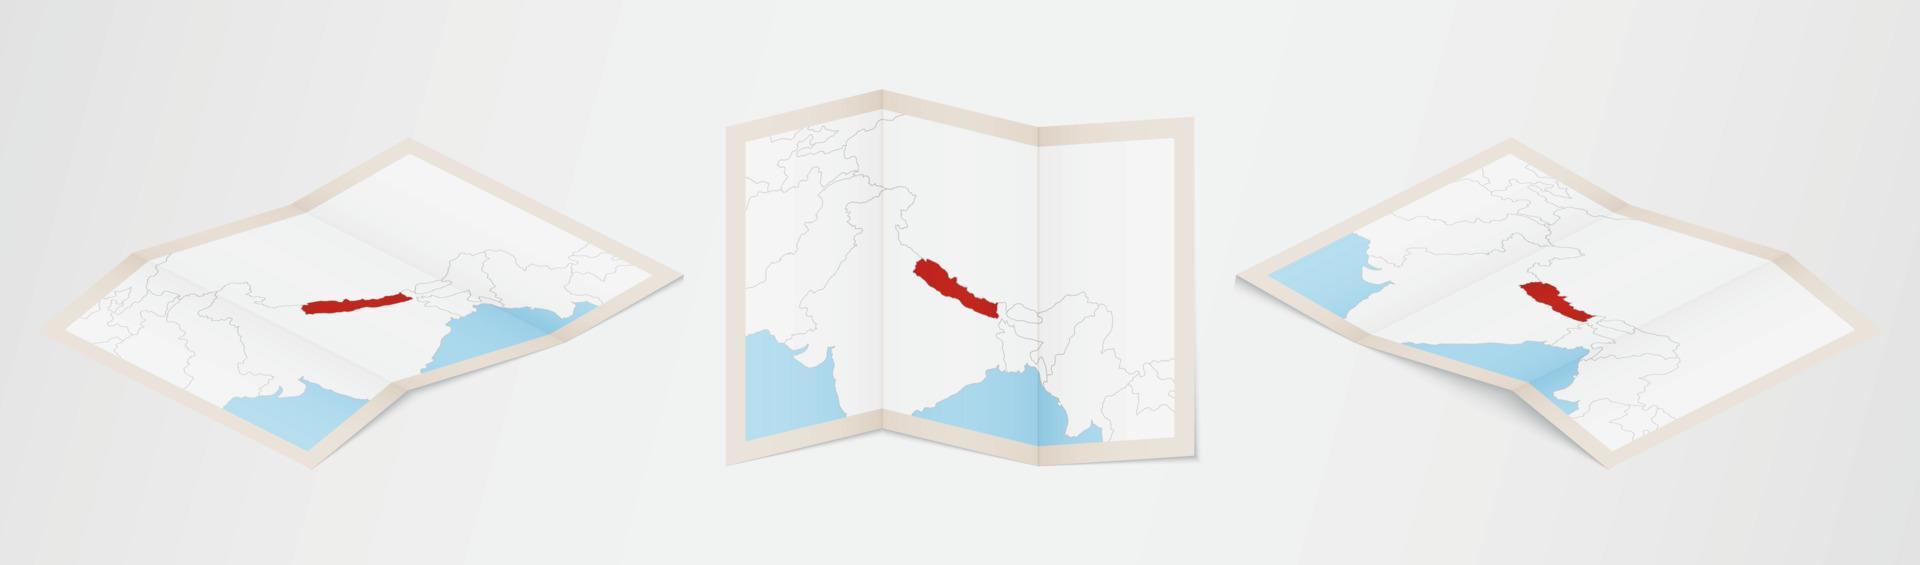 Faltkarte von Nepal in drei verschiedenen Versionen. vektor